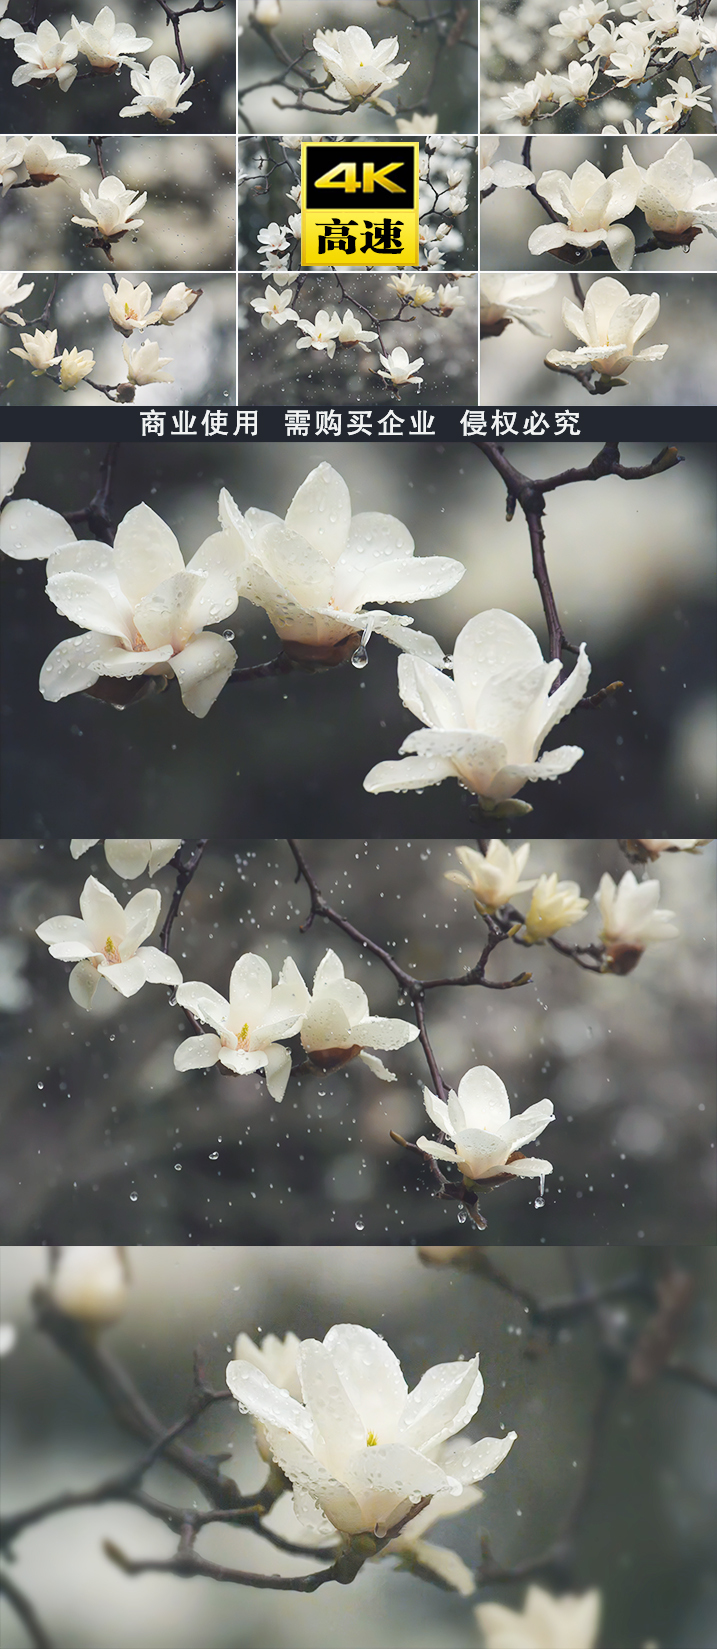 雨花开开花春天玉兰花意境雨水美学水滴滴水